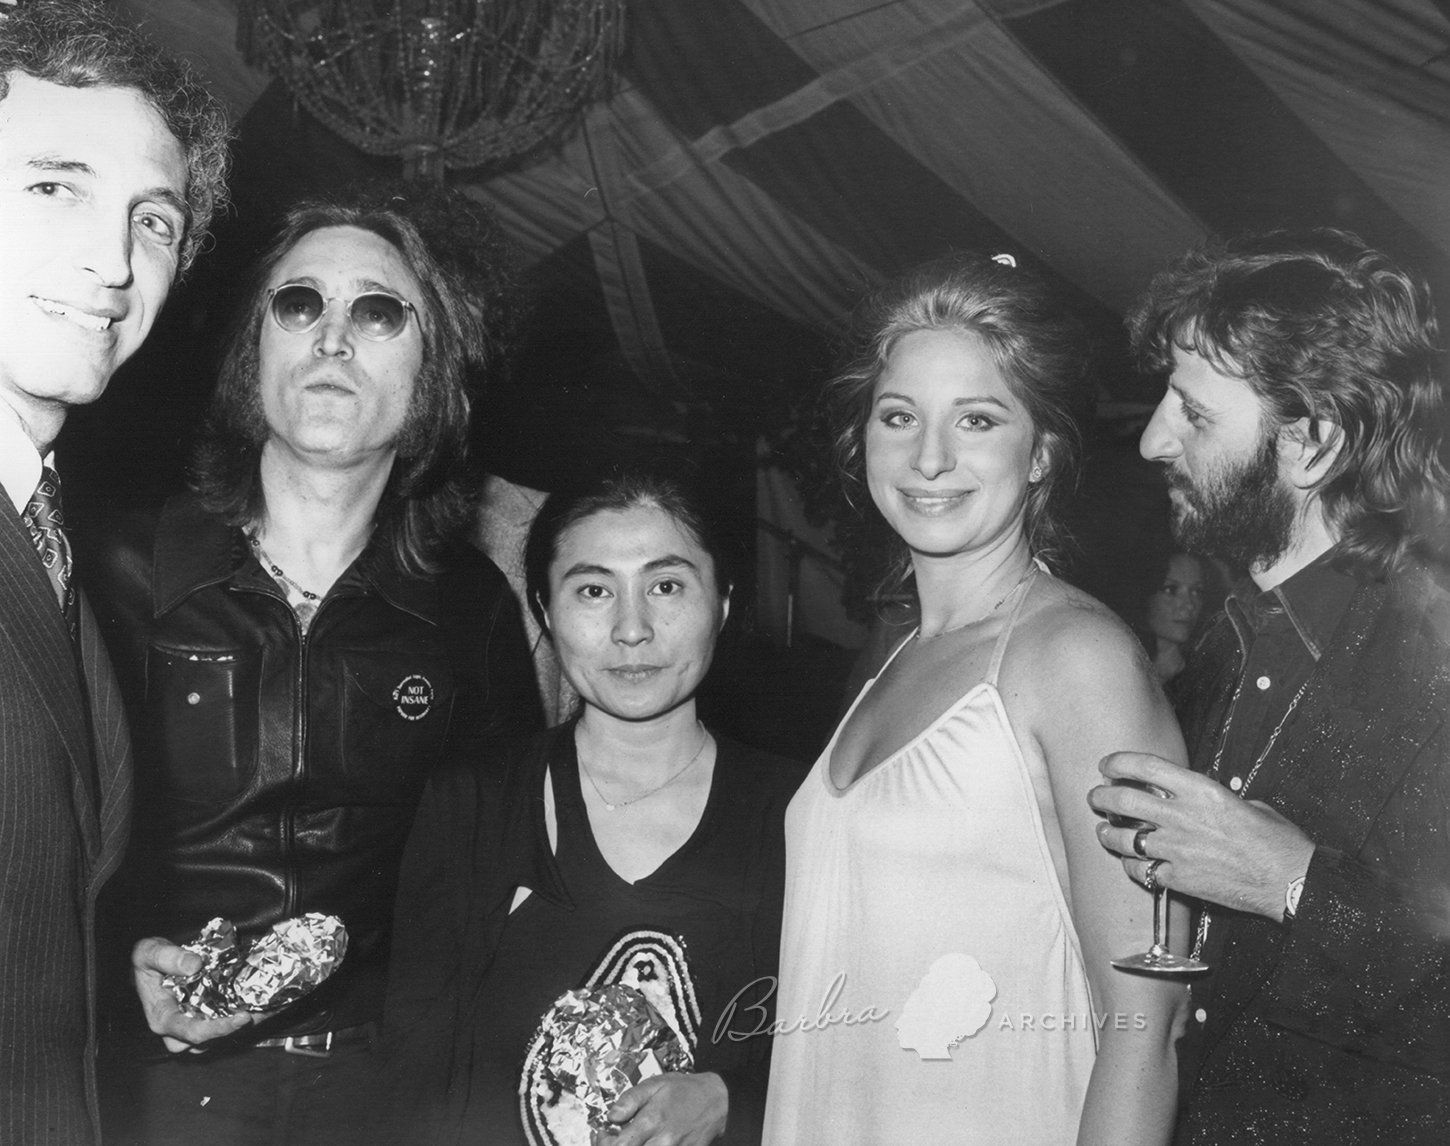 Daniel Ellsberg, John Lennon, Yoko Ono, Barbra Streisand, and Ringo Star together at a fundraiser for Ellsberg, 1973.